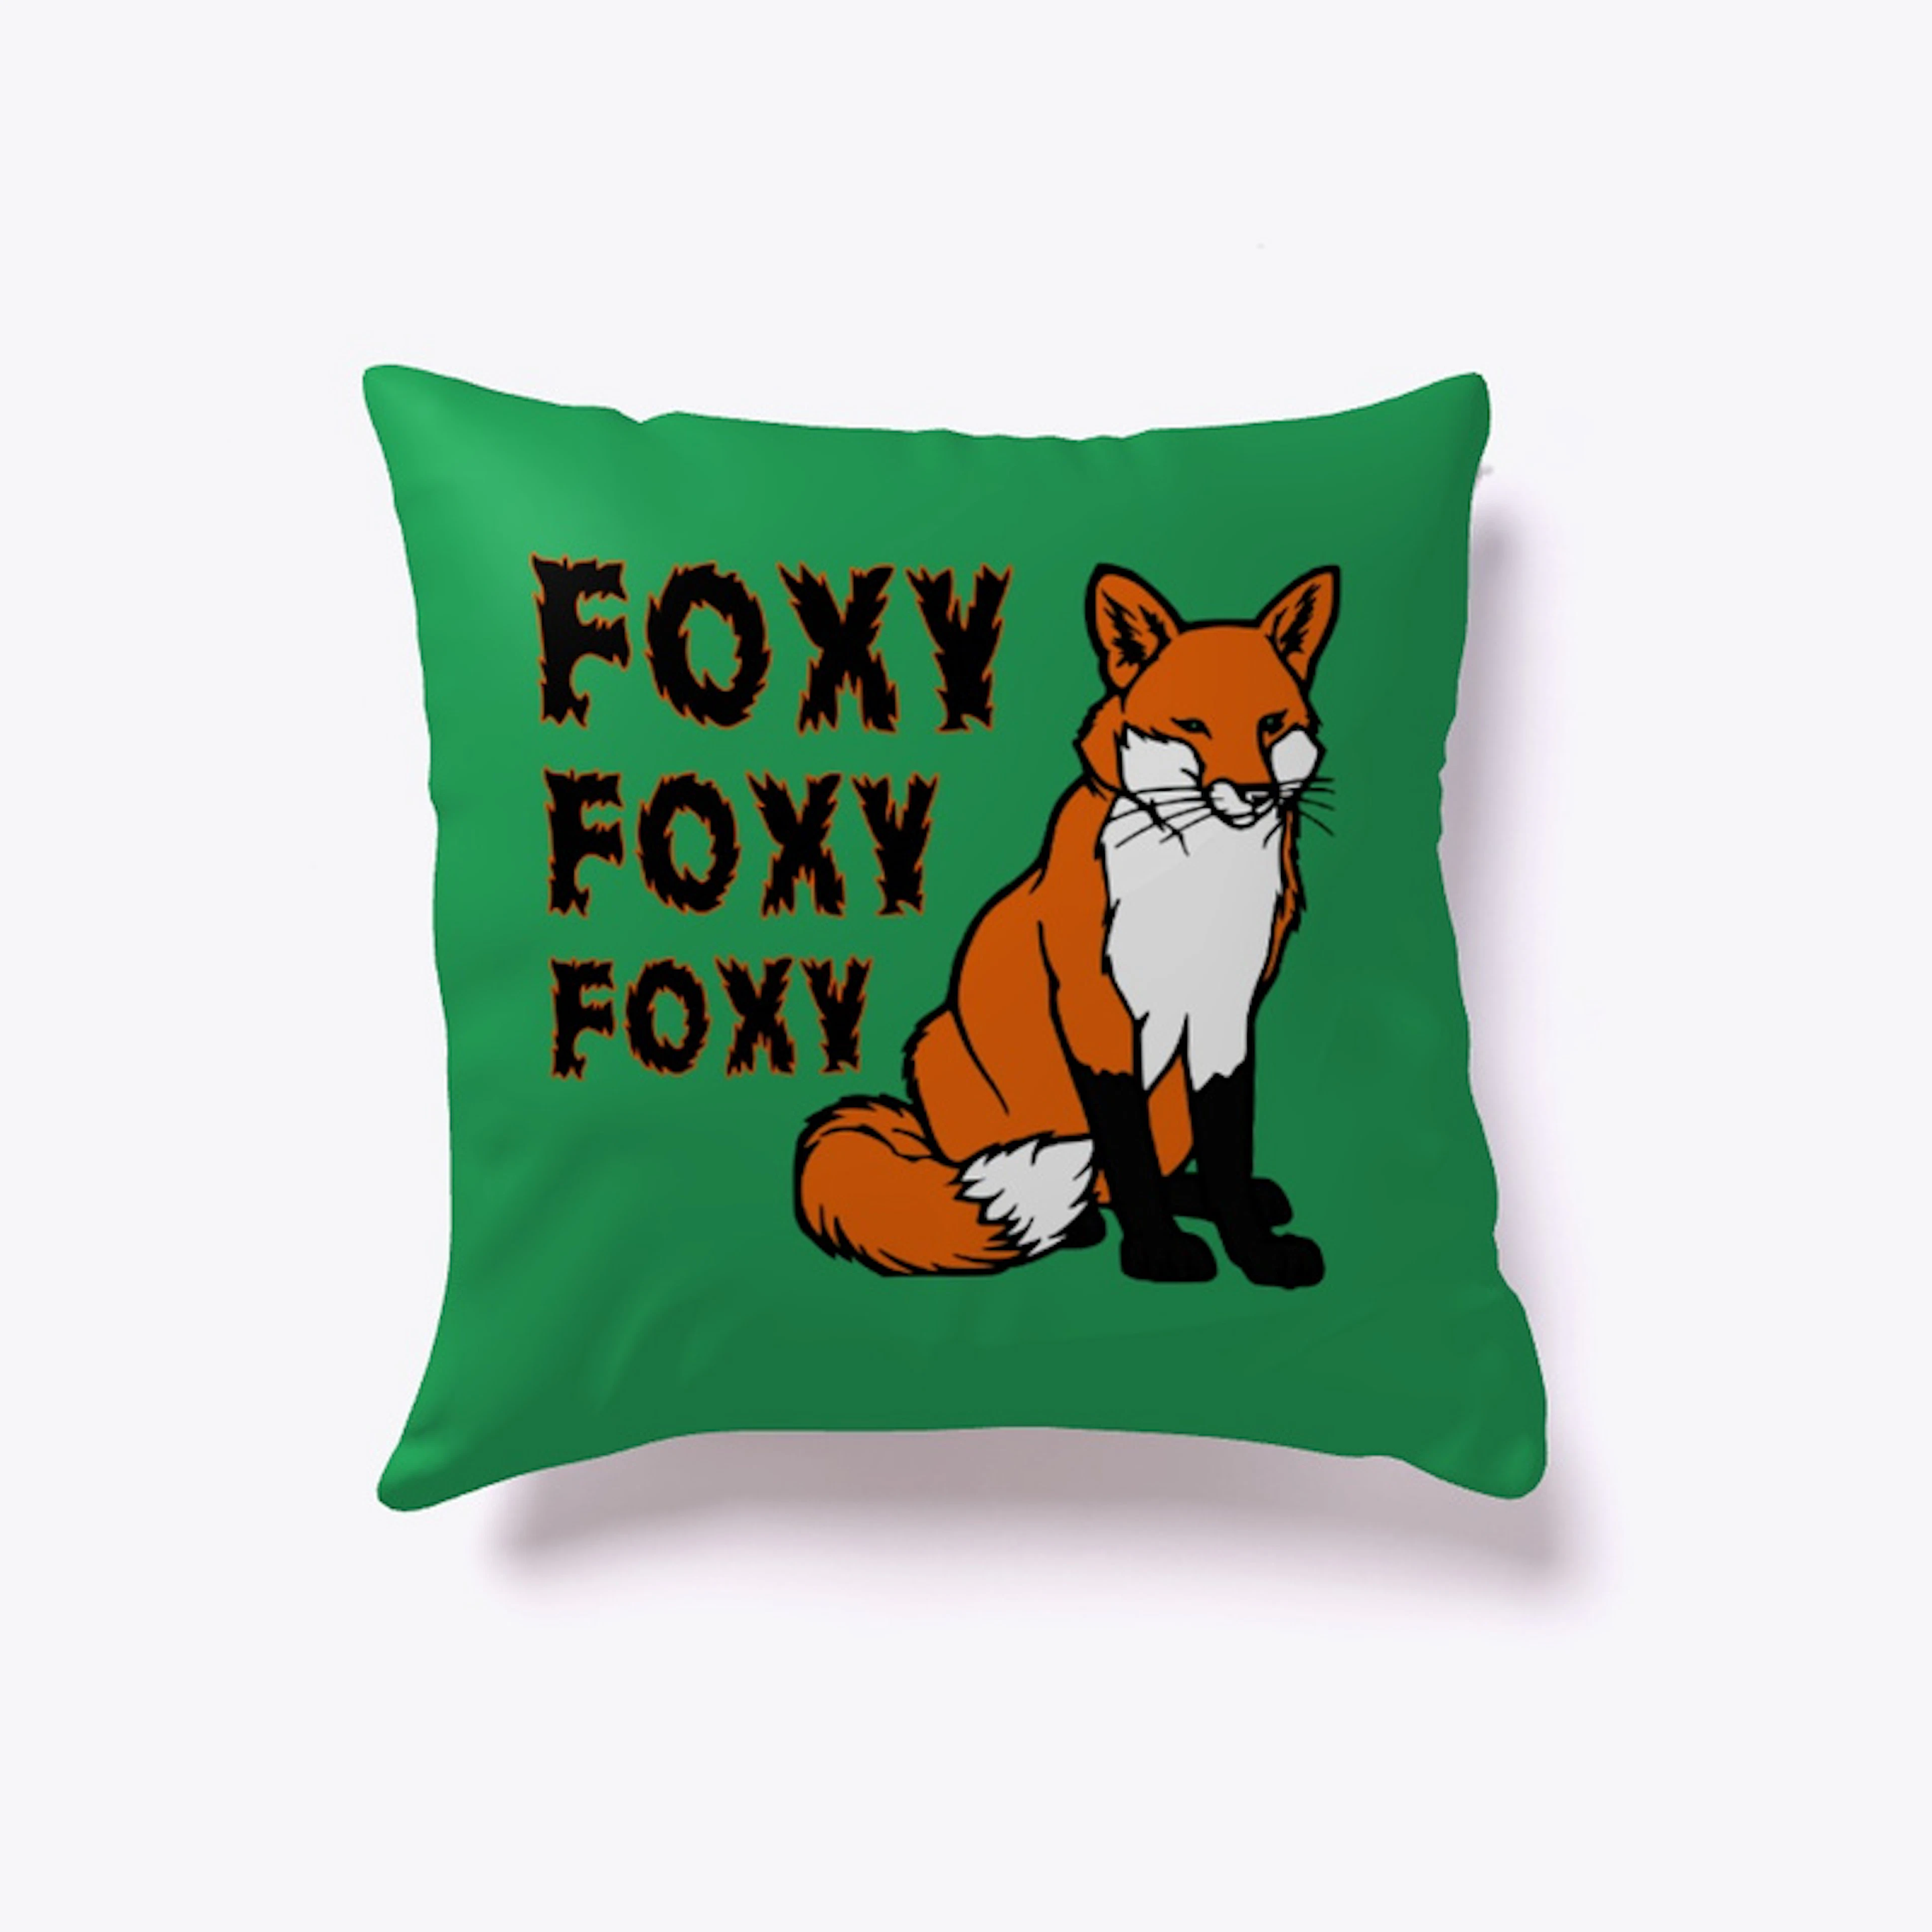 Foxy Foxy Foxy